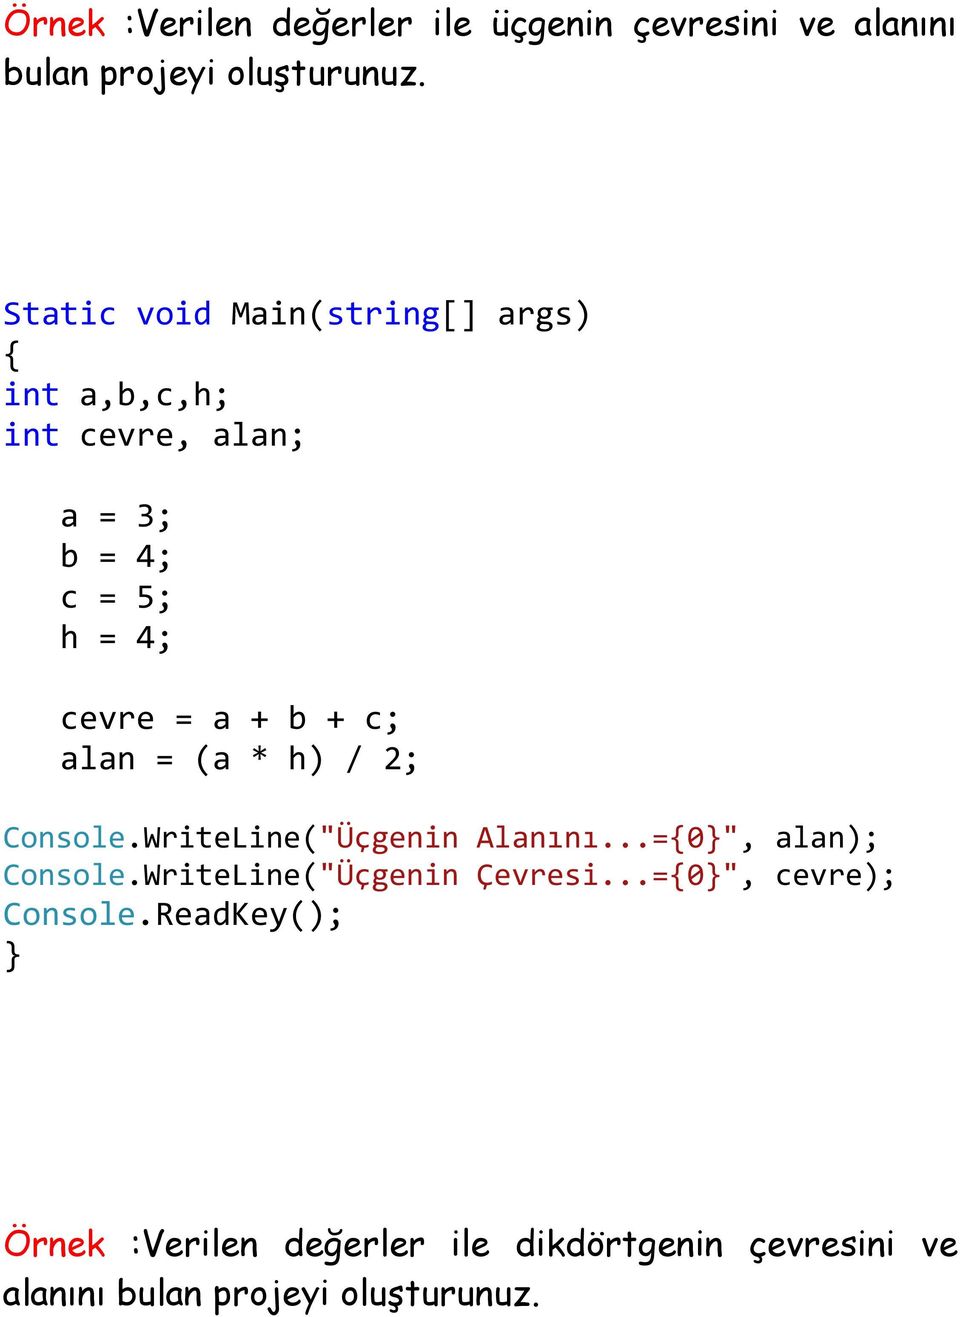 + c; alan = (a * h) / 2; Console.WriteLine("Üçgenin Alanını...=0", alan); Console.